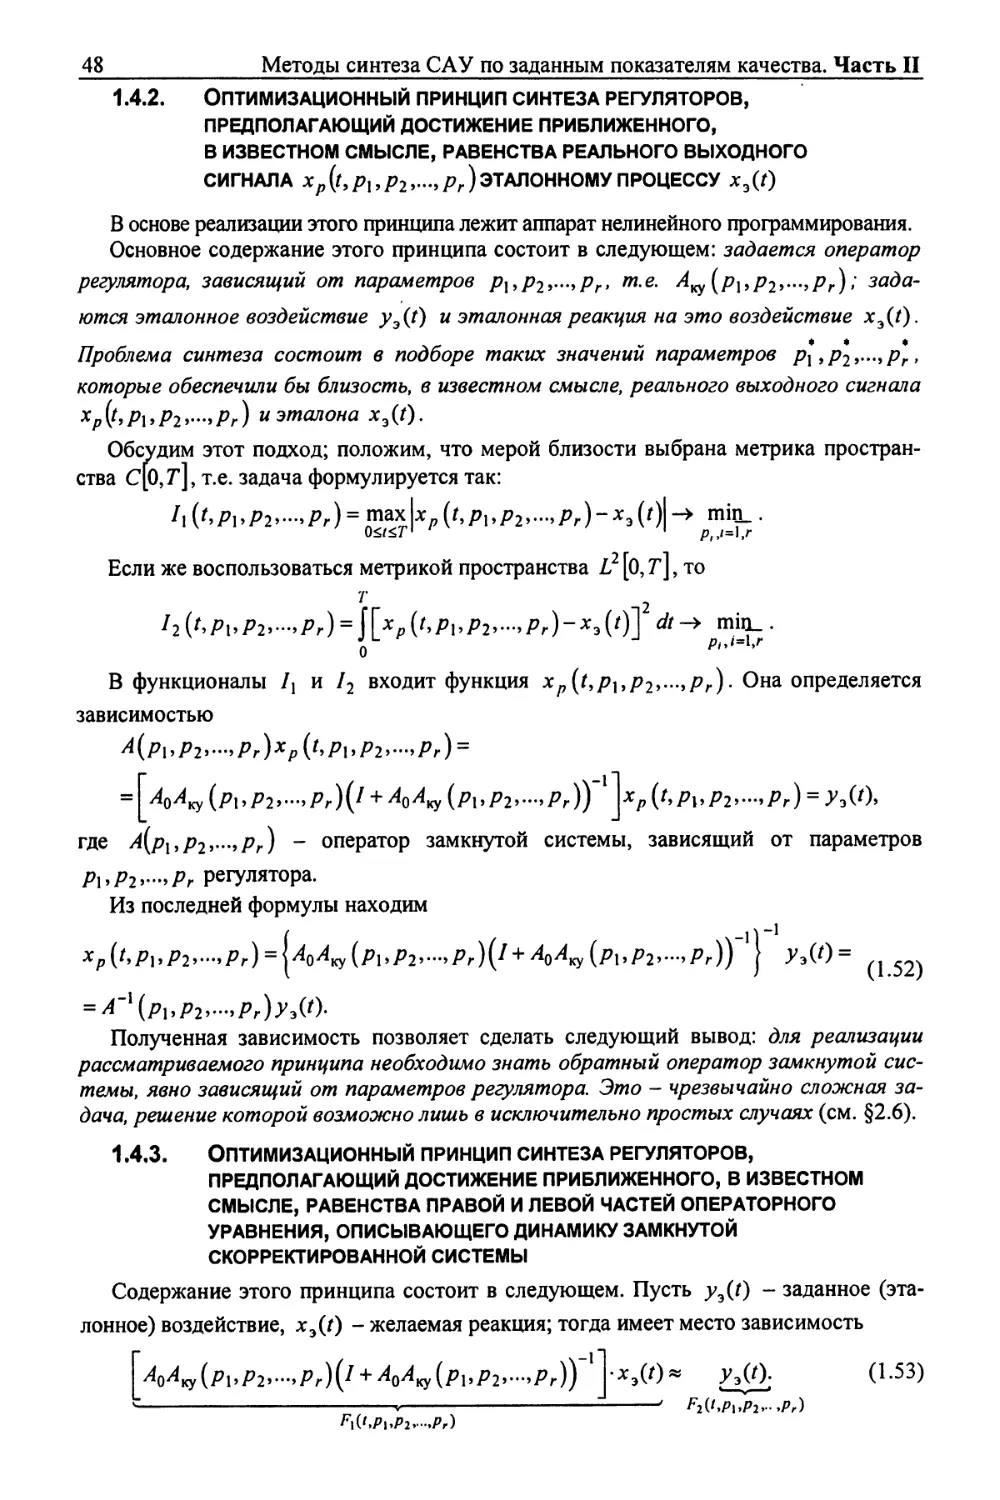 1.4.3. Оптимизационный принцип синтеза регуляторов, предполагающий достижение приближенного, в известном смысле, равенства правой и левой частей операторного уравнения, описывающего динамику замкнутой скорректированной системы